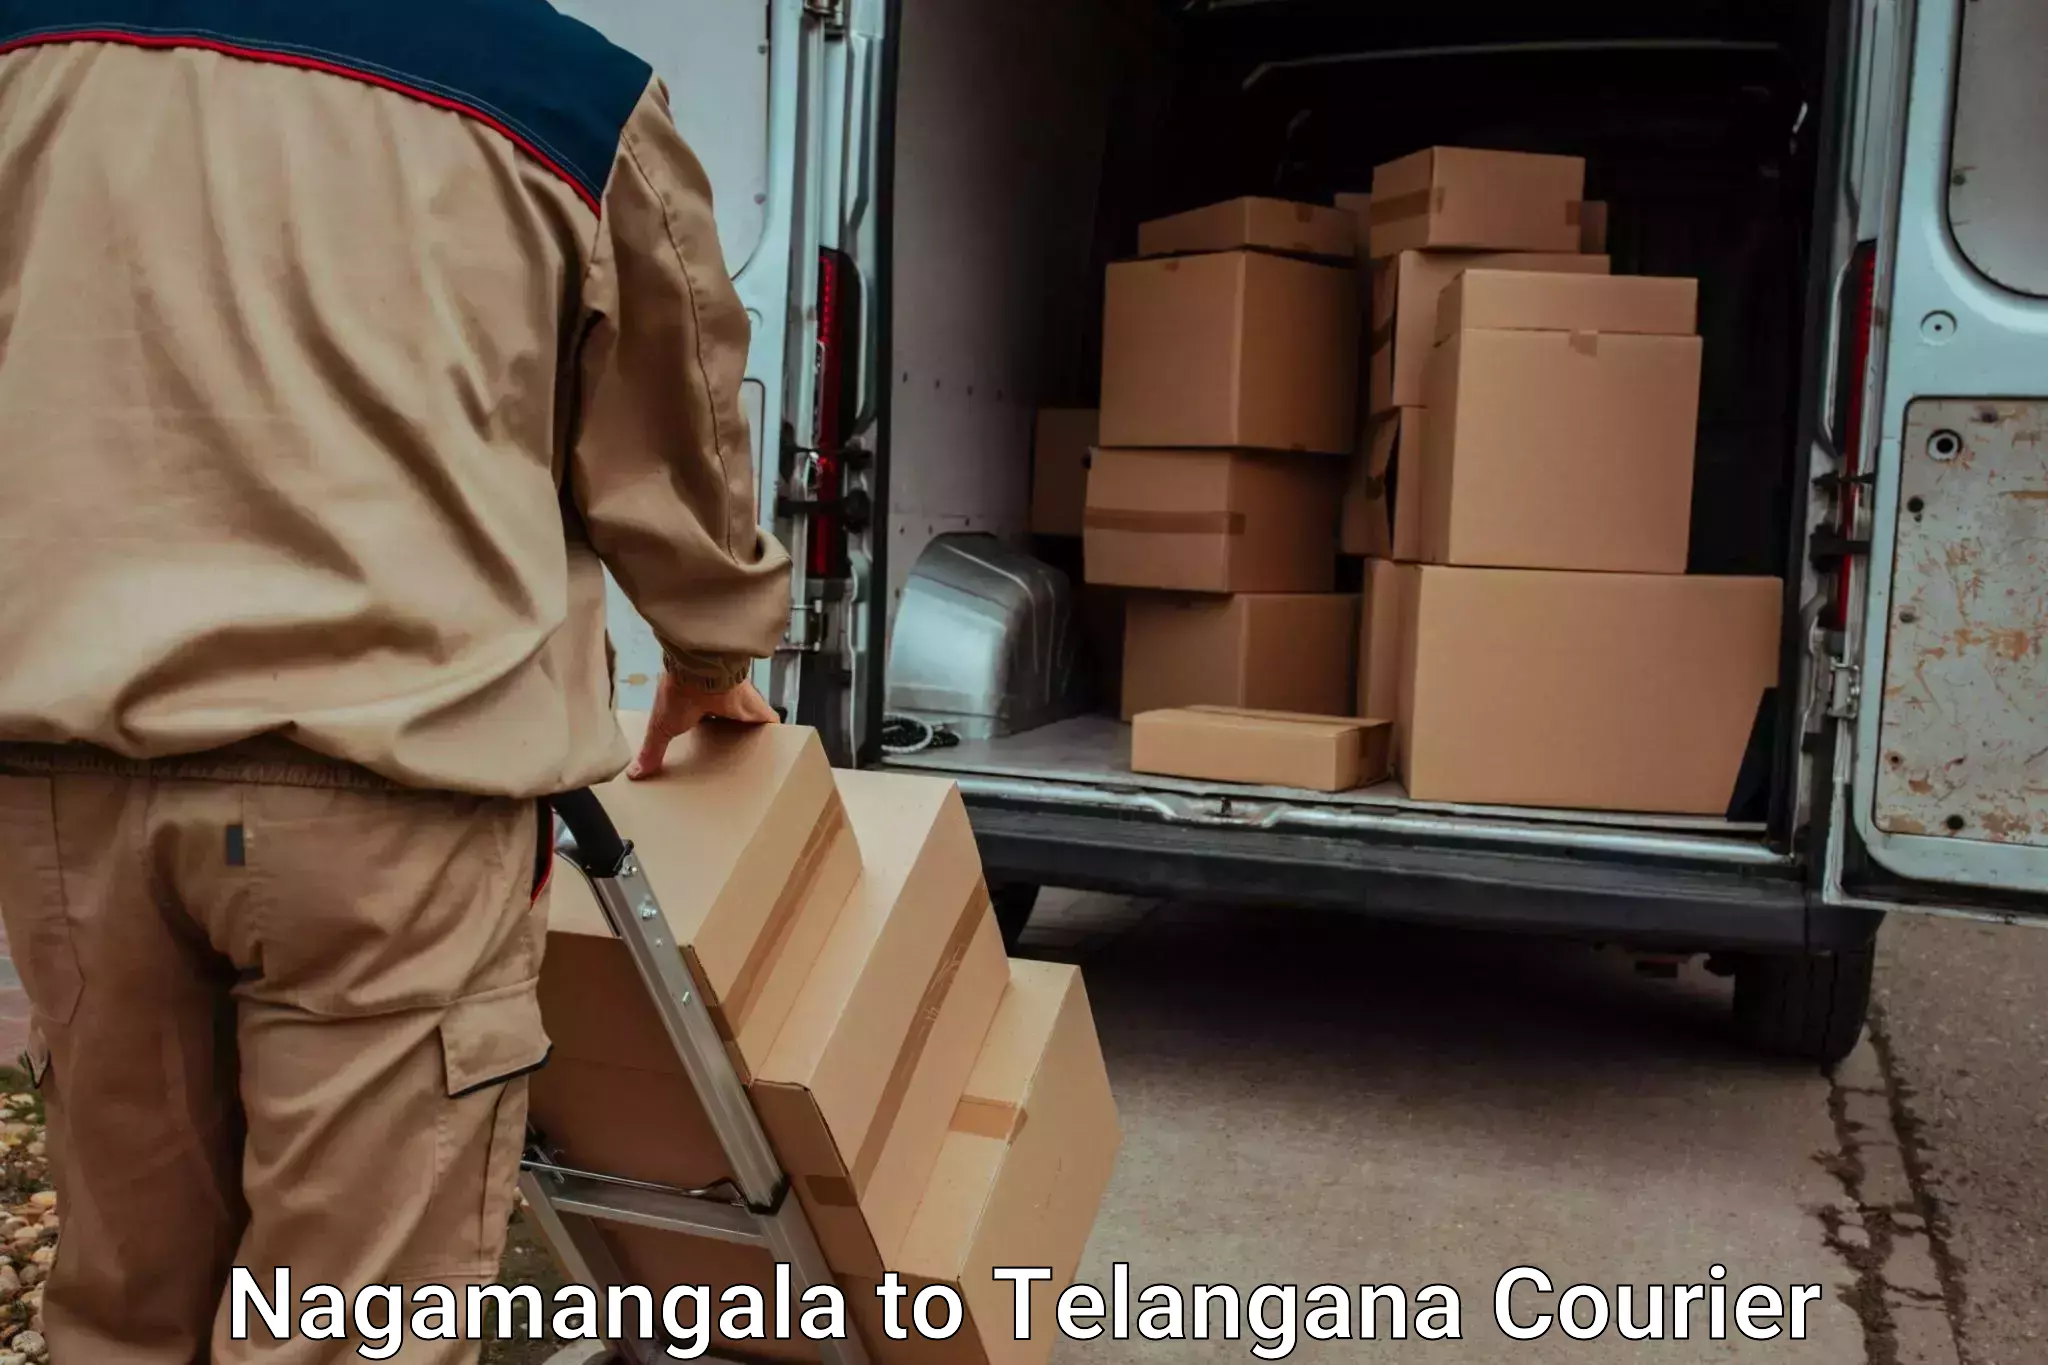 Same day luggage service Nagamangala to Odela